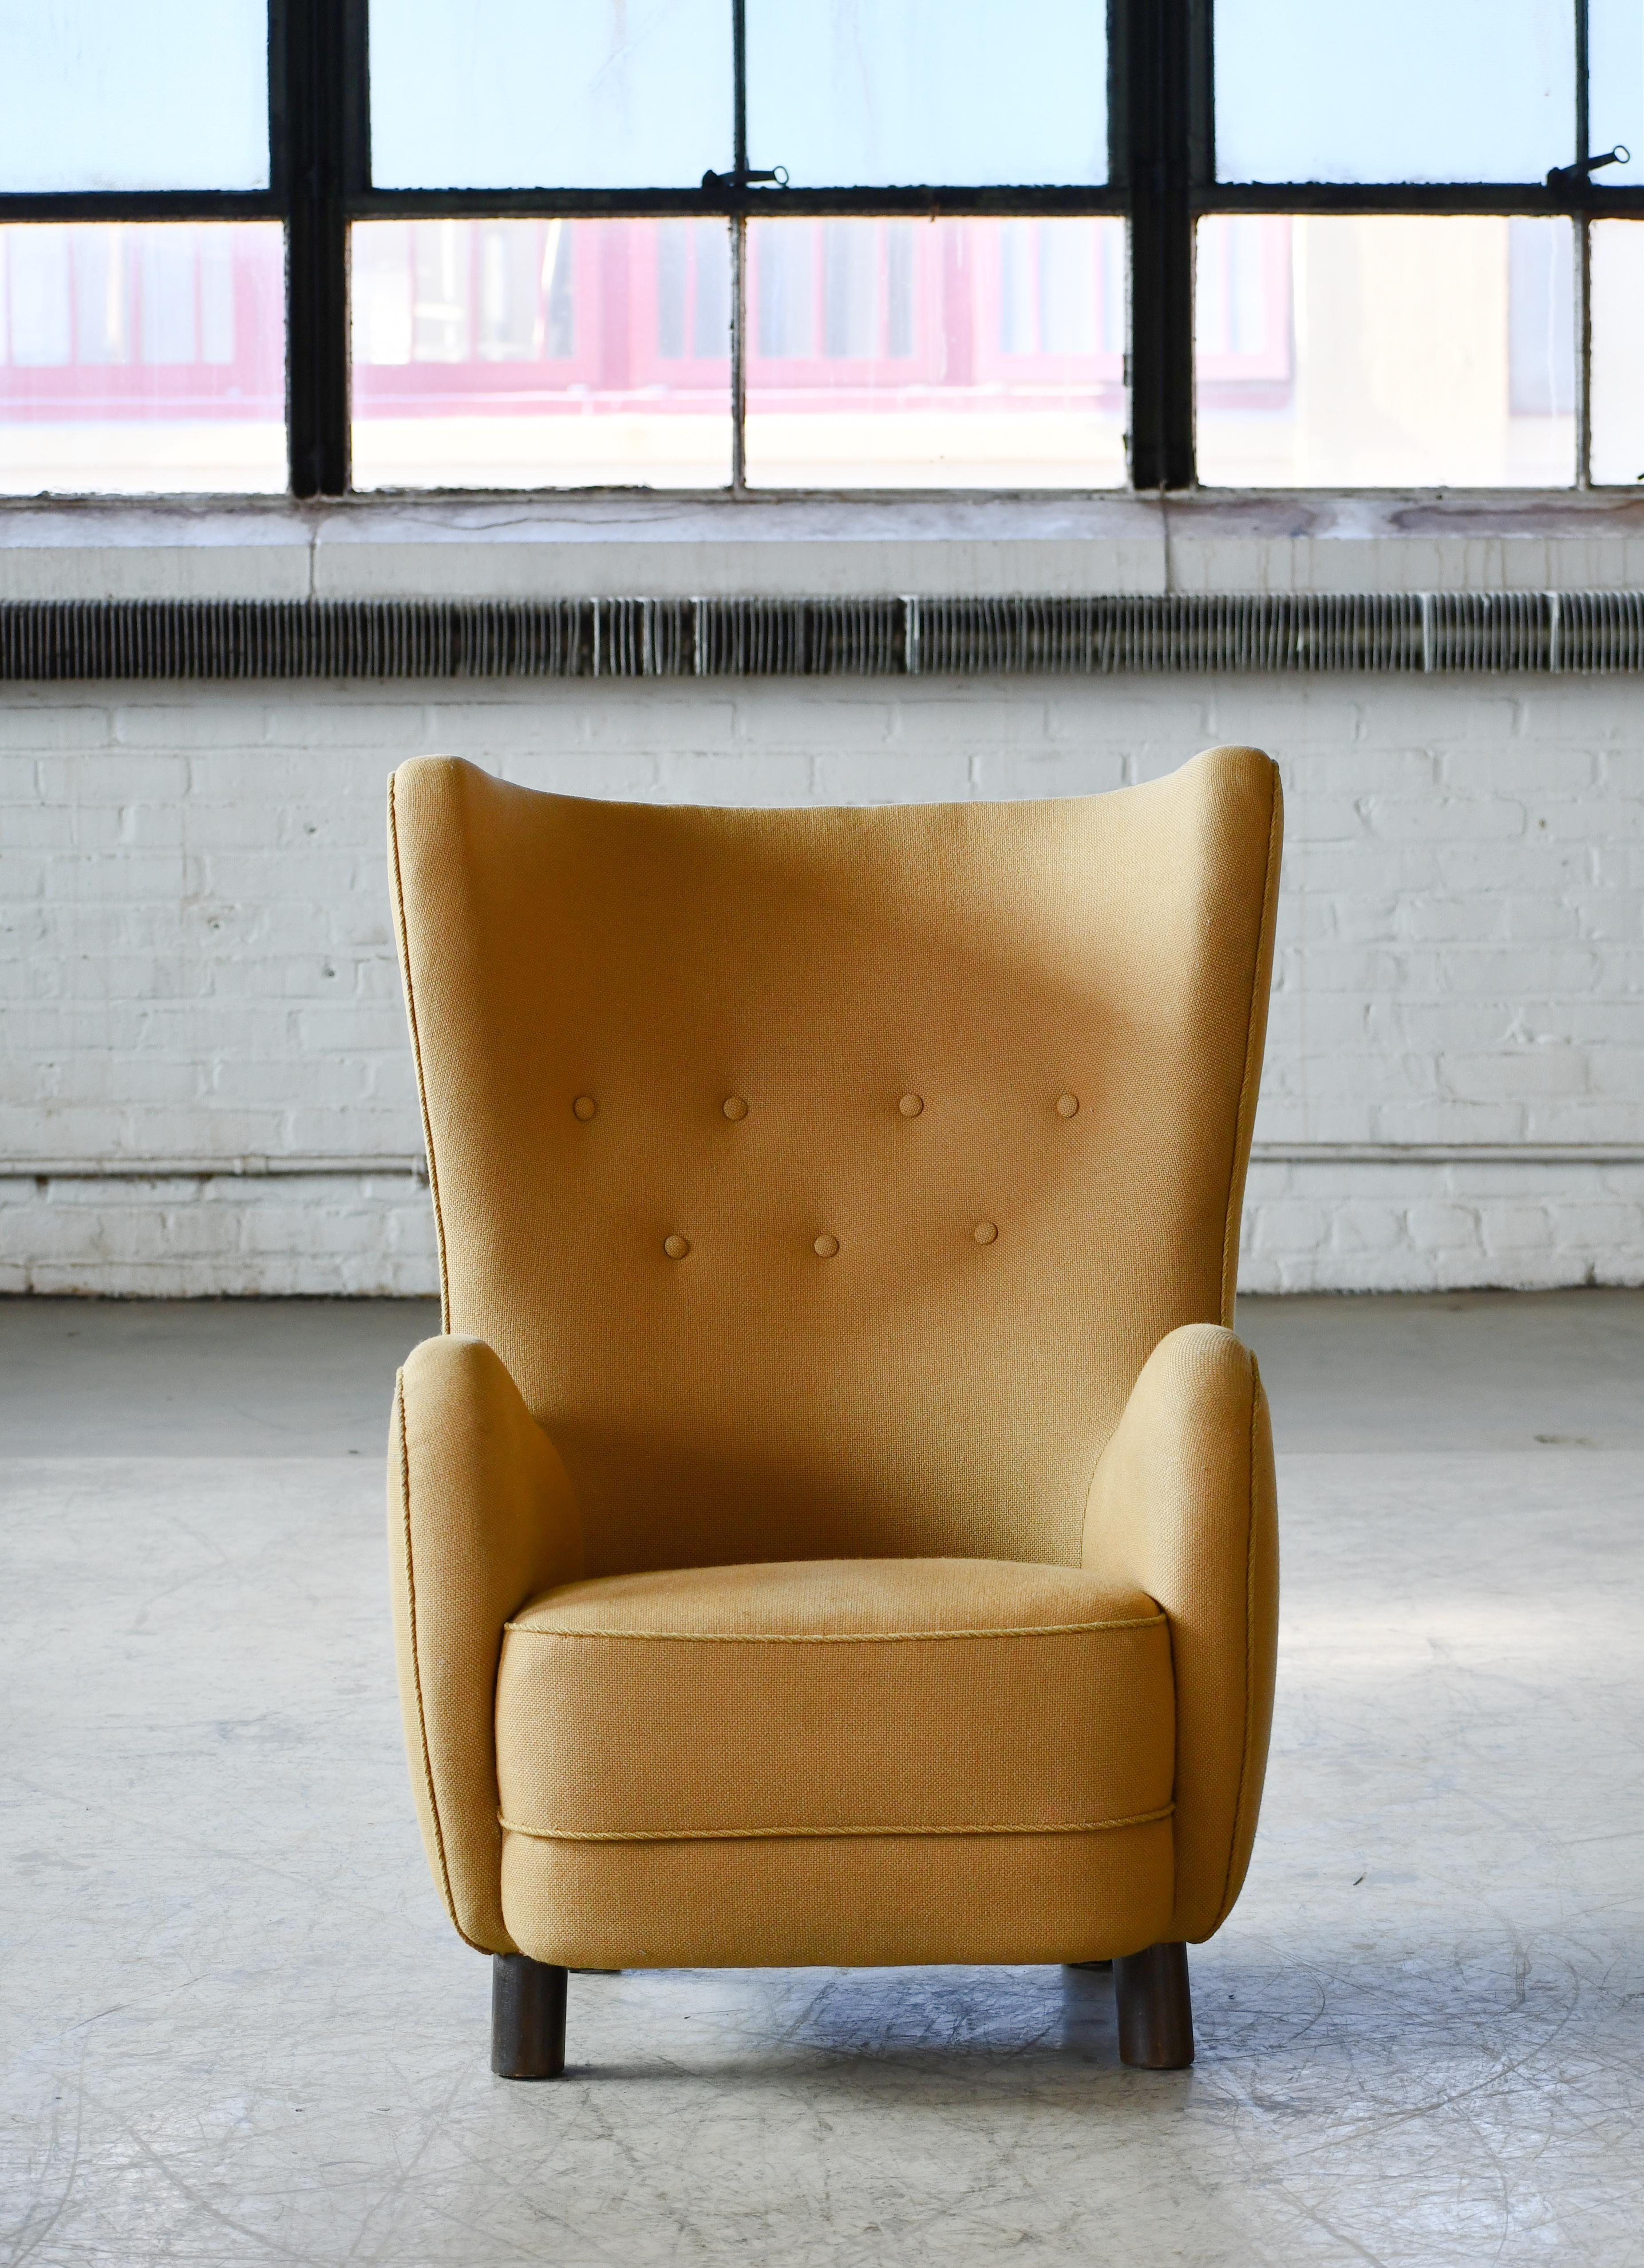 Magnifique chaise longue à haut dossier attribuée à Flemming Lassen, fabriquée vers 1940. Cette chaise longue iconique est probablement l'un des dossiers hauts les plus parfaits jamais conçus. Une pièce parfaite avec sa forme sensuelle et